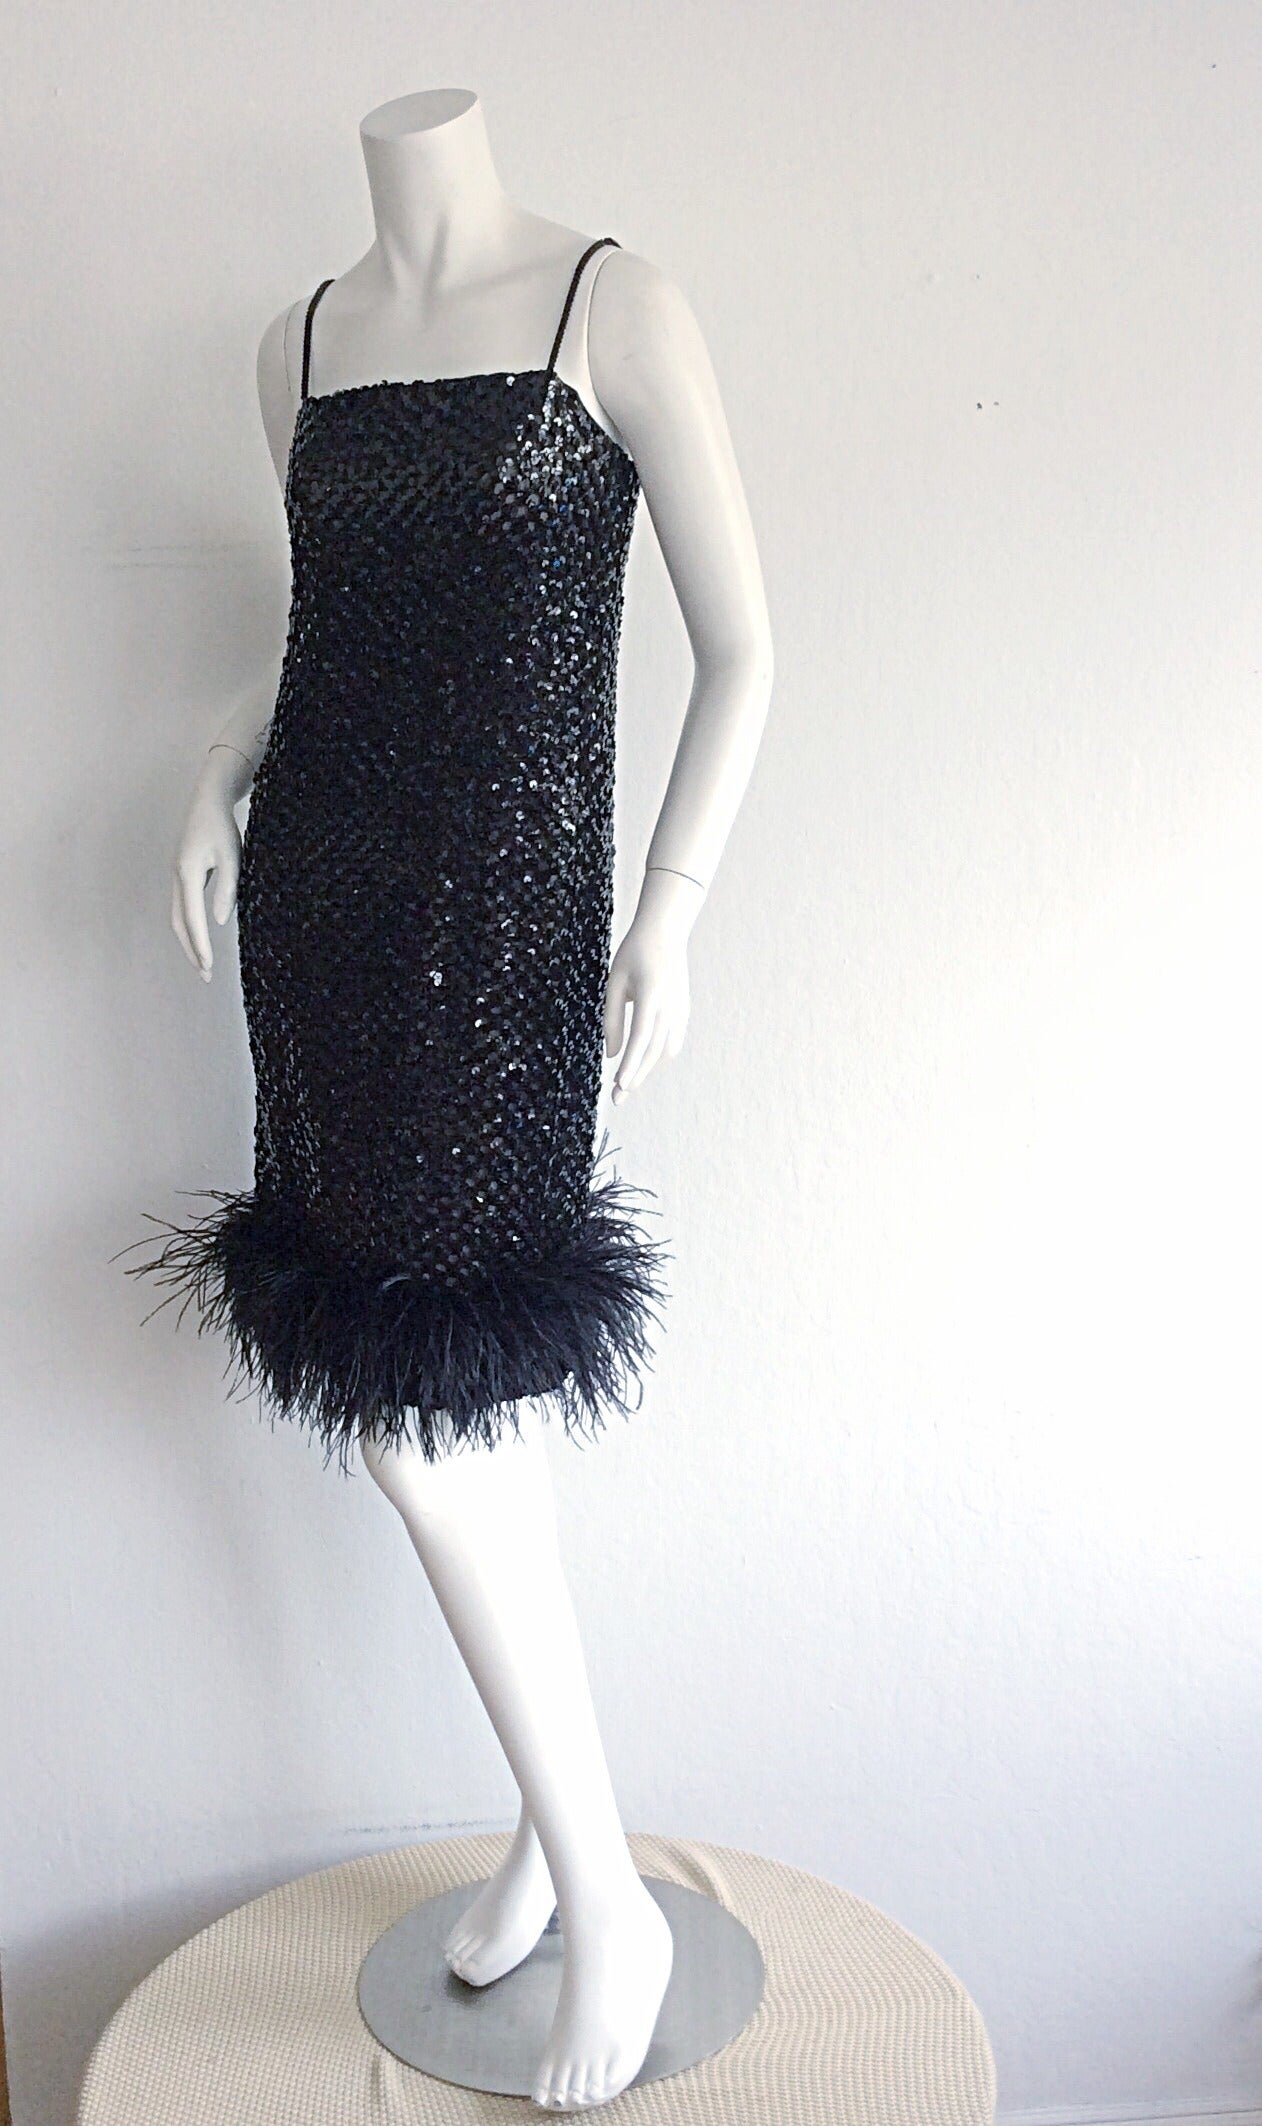 Wunderschönes schwarzes Paillettenkleid von I. Magnin aus den 1960er Jahren, mit Saum aus Straußenfedern! Wunderschönes nudefarbenes, doppellagiges Chiffon, das durch Pailletten durchscheint. Das perfekte kleine schwarze Kleid. Toll allein oder mit